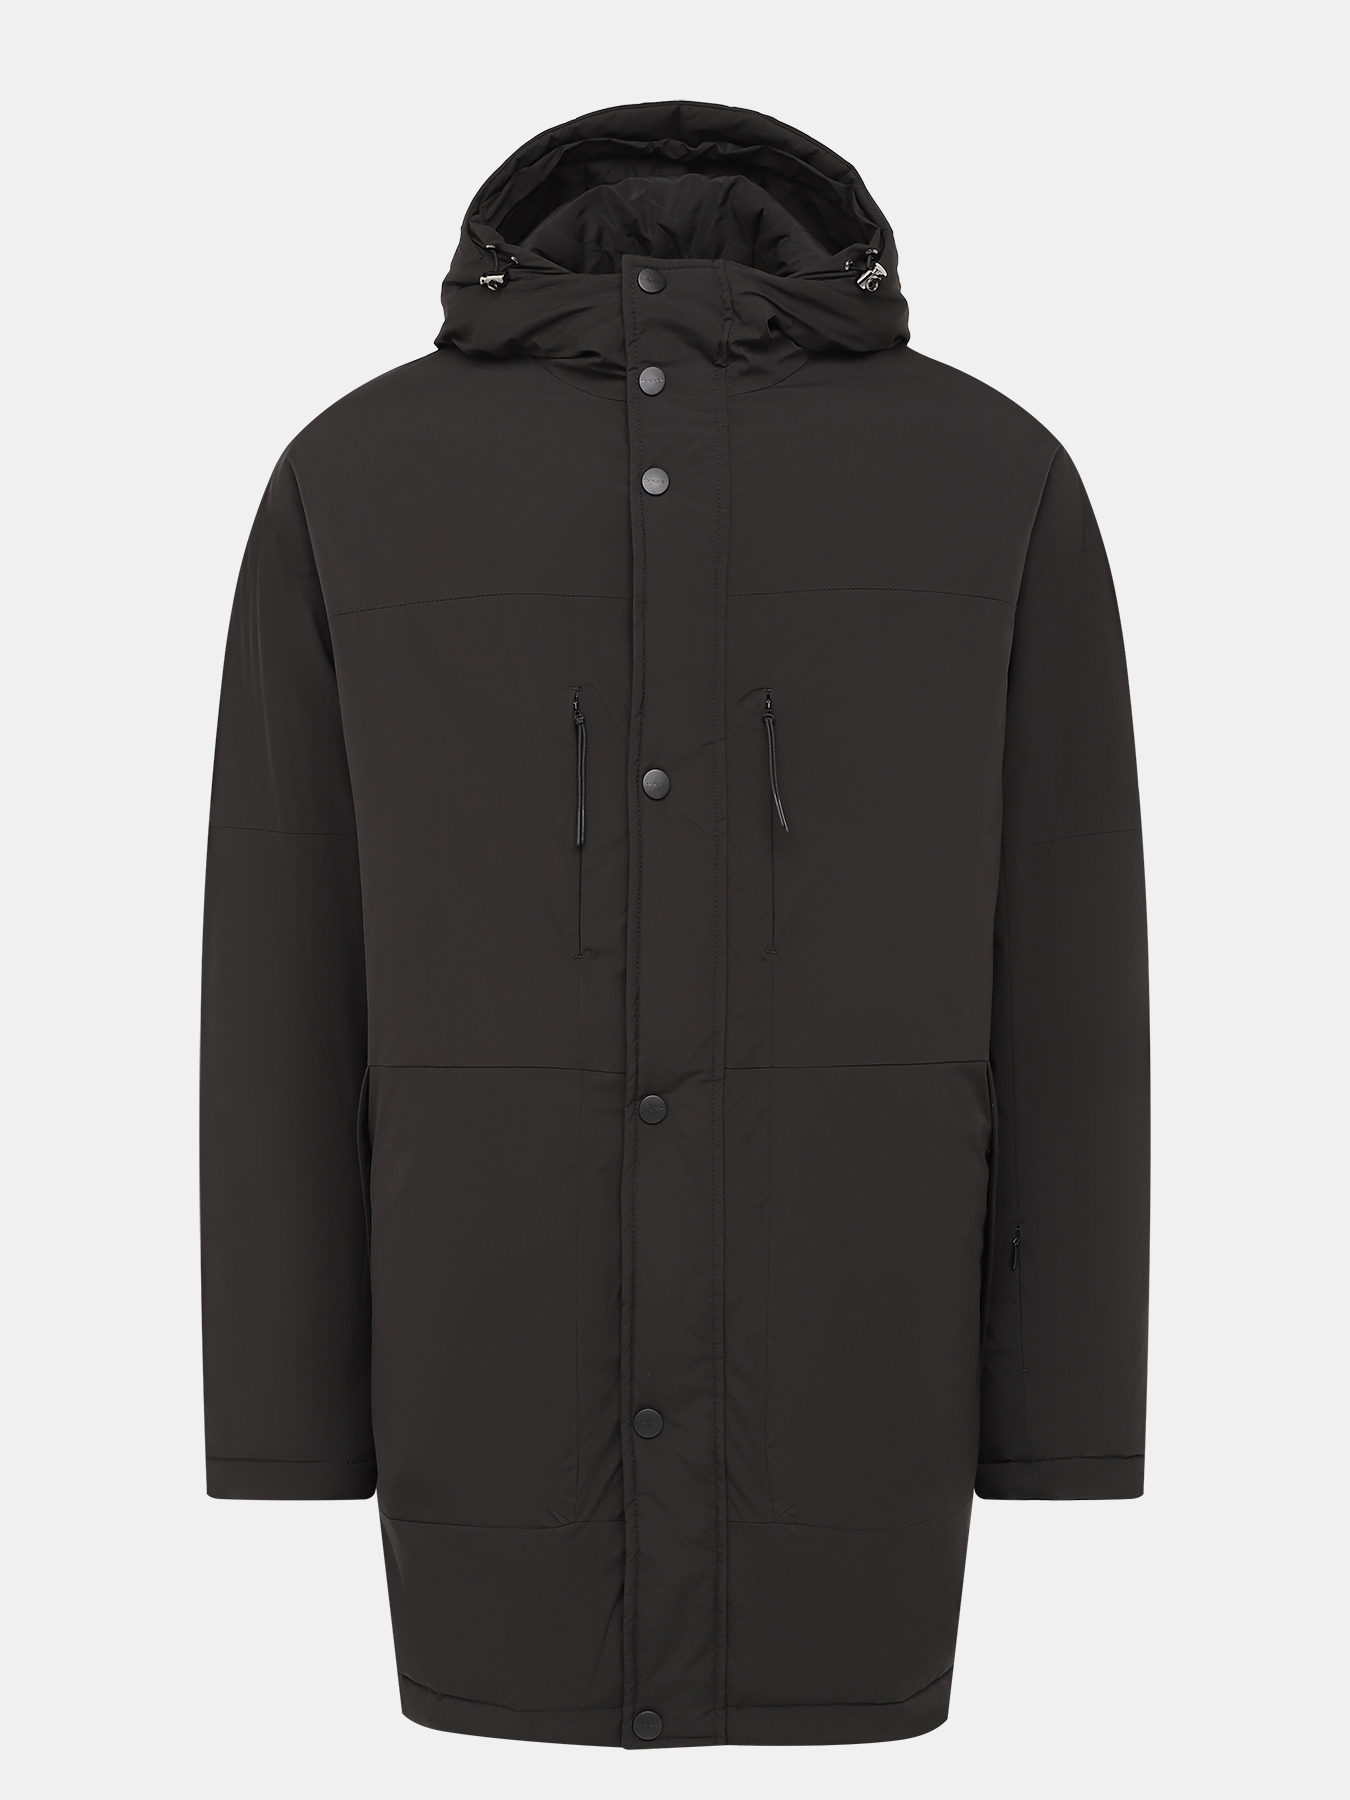 Удлиненная куртка Pierre Cardin 426248-287, цвет черный, размер 56-58